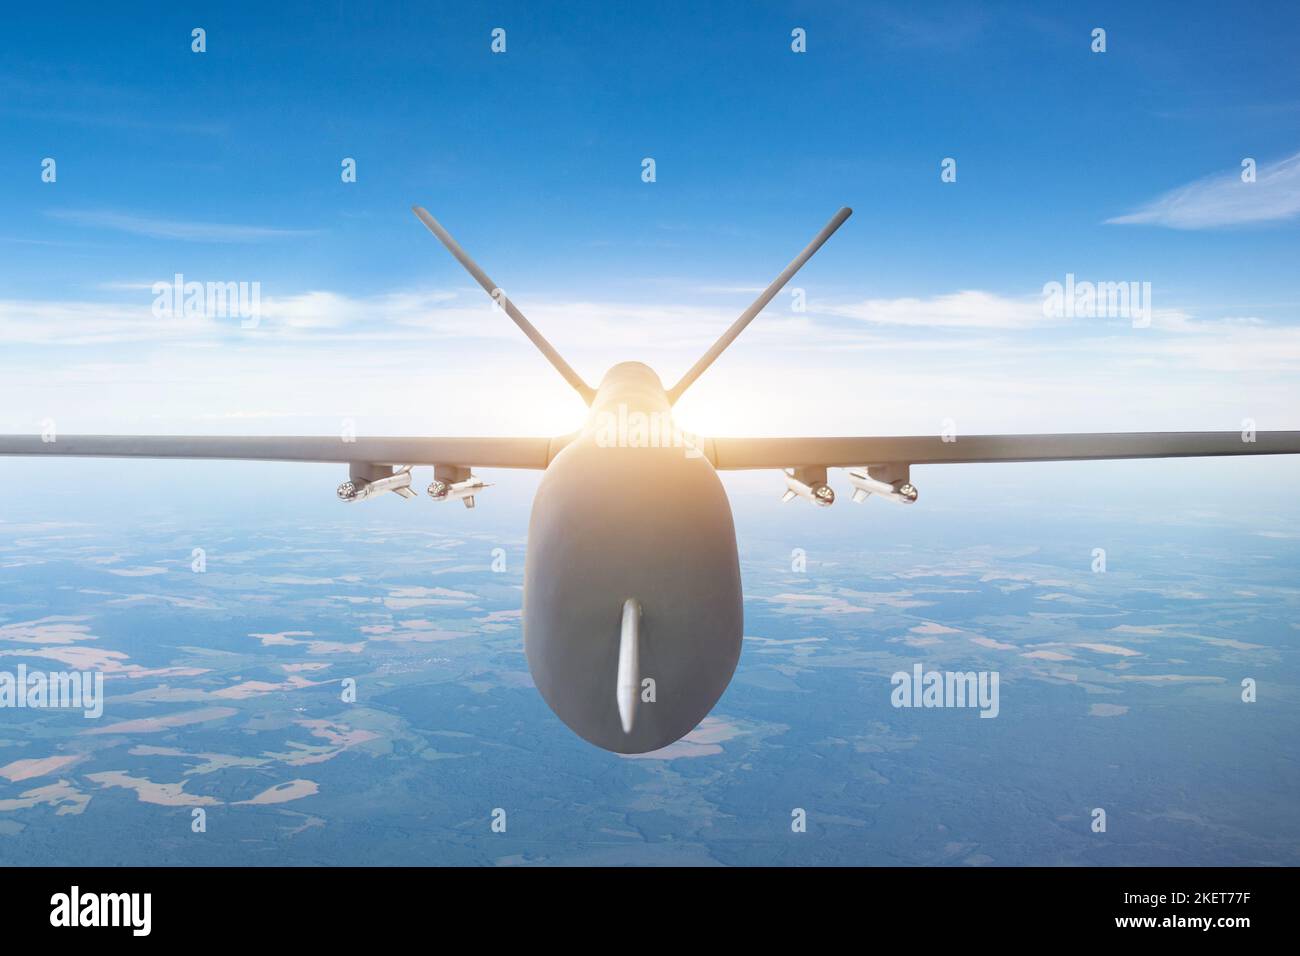 Vue rapprochée d'un drone militaire, volant haut dans le ciel Banque D'Images